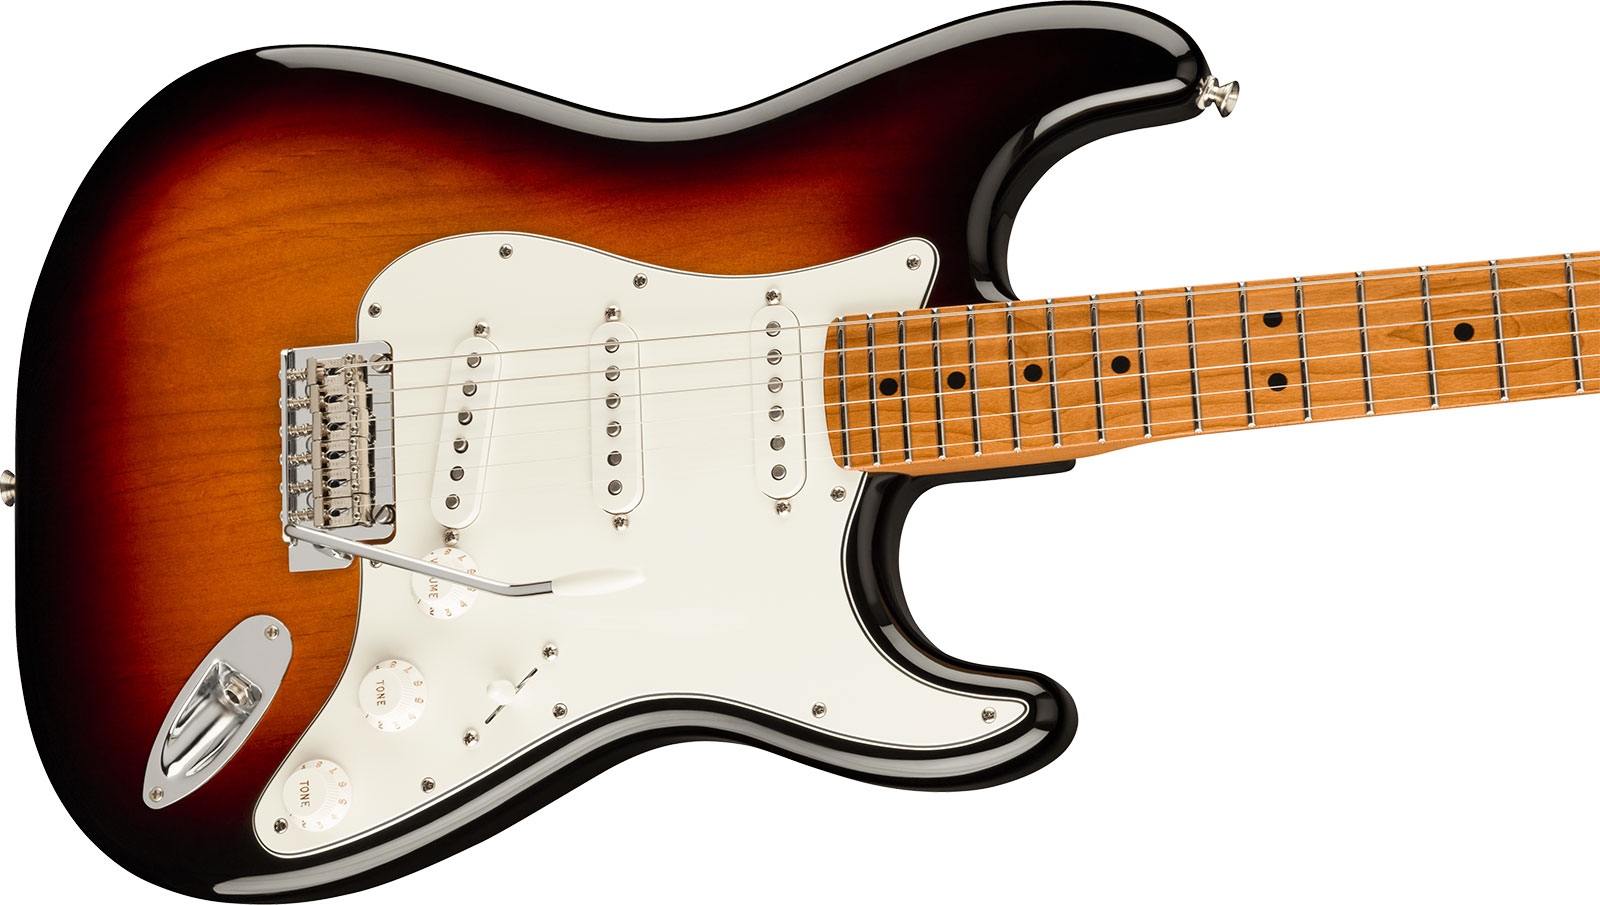 Fender Strat Player Roasted Maple Neck Ltd Mex 3s Trem Mn - 3 Color Sunburst - E-Gitarre in Str-Form - Variation 2